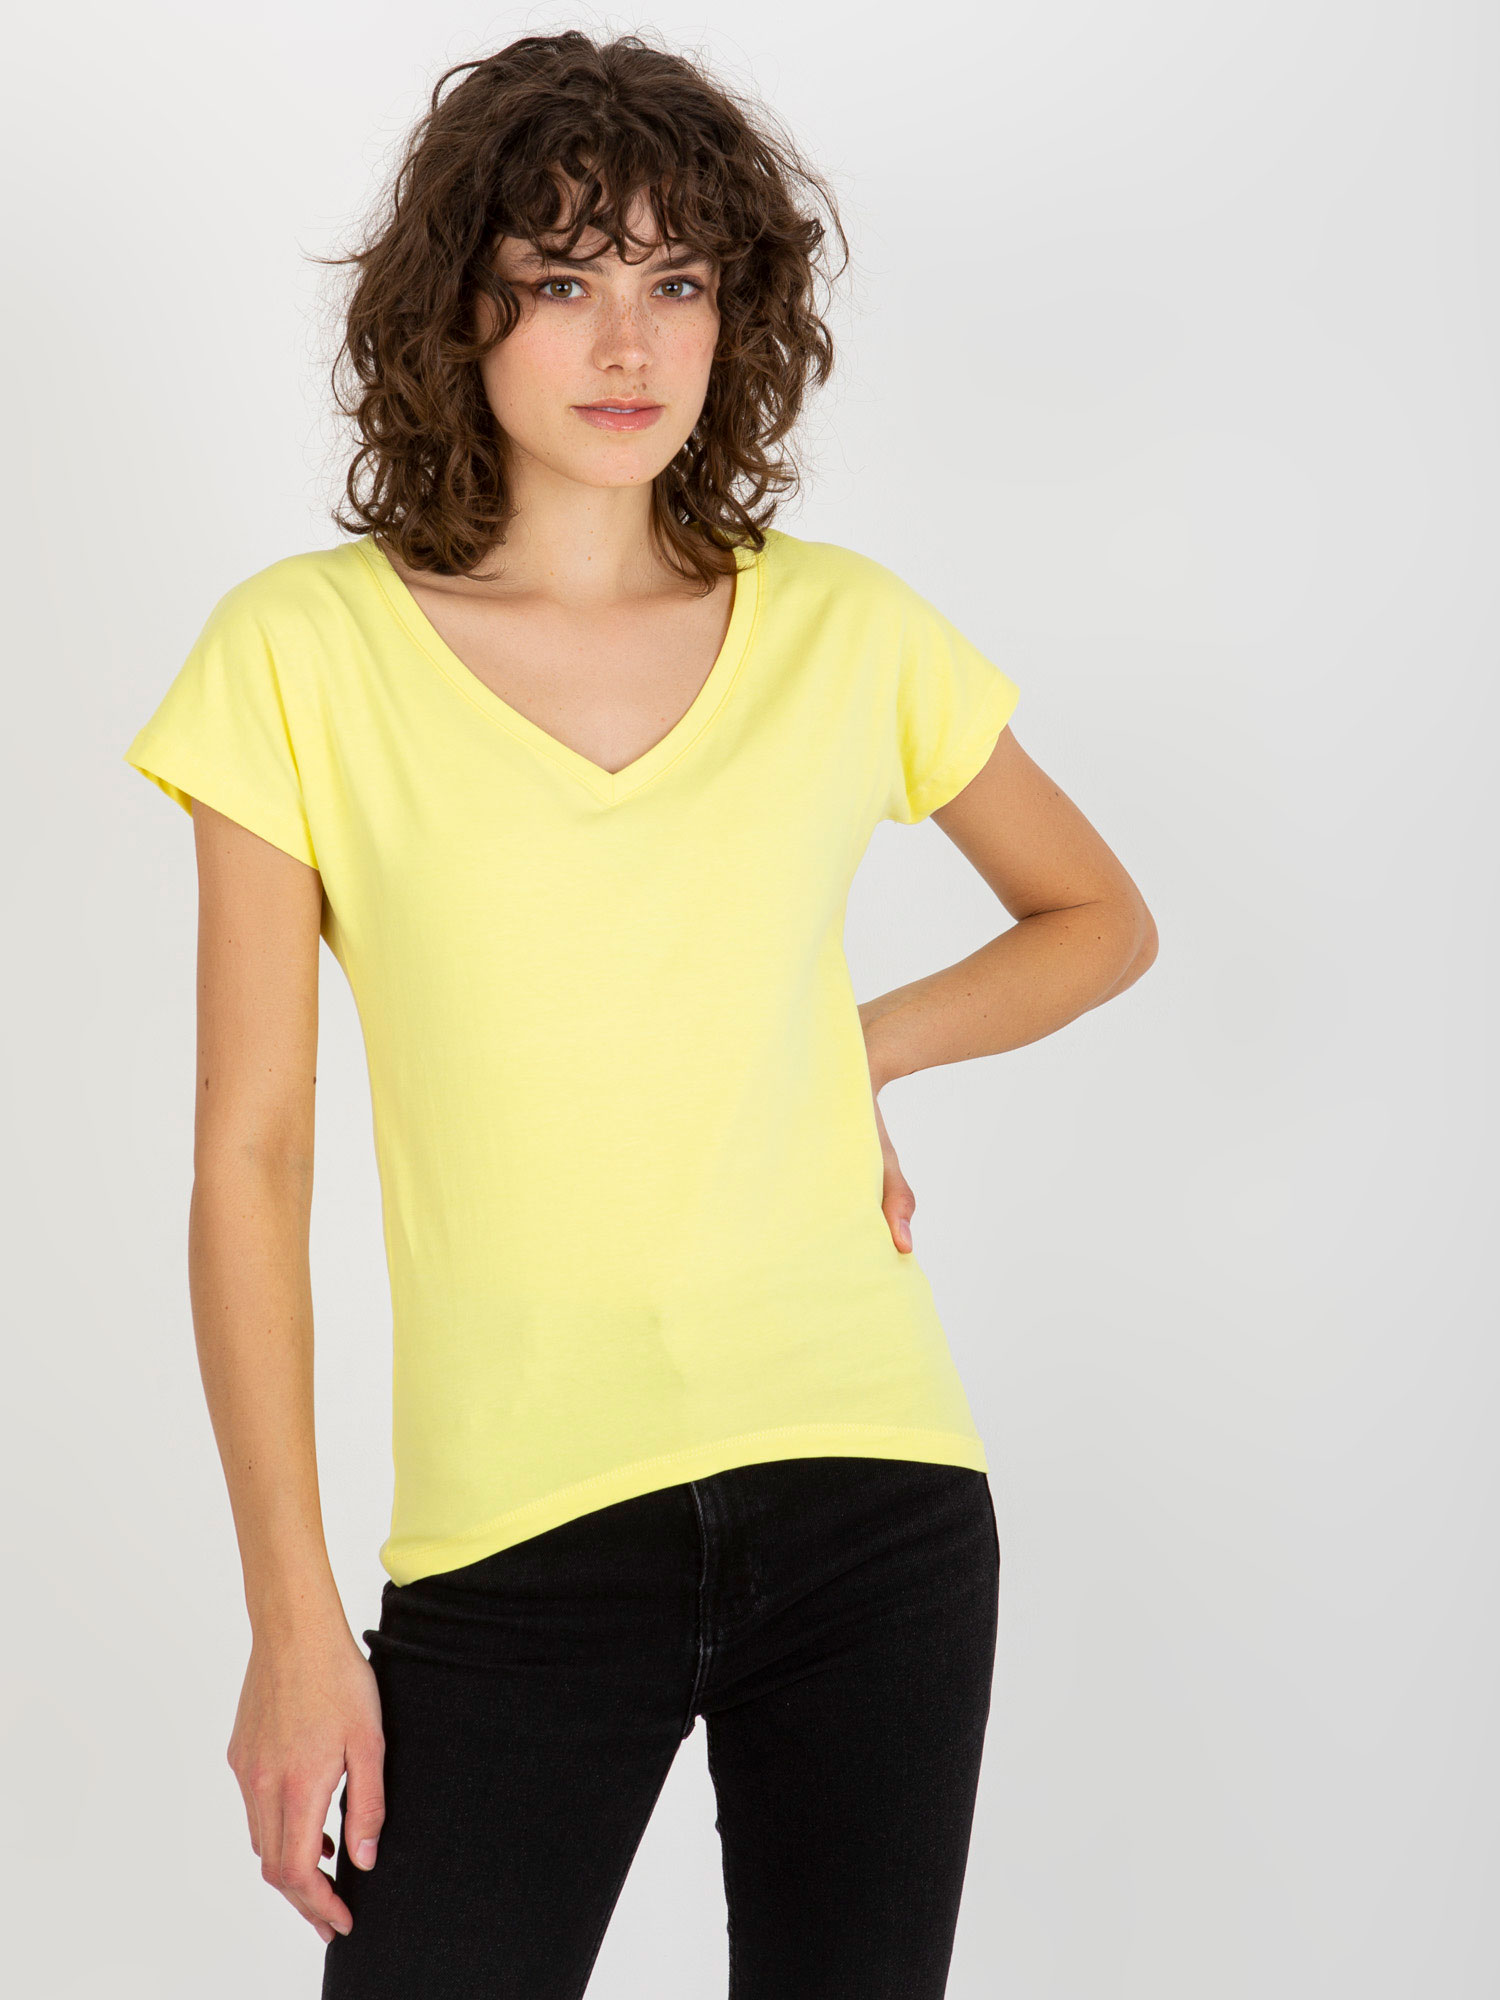 Světle žluté dámské tričko s výstřihem VI-TS-035.01P-light yellow Velikost: L